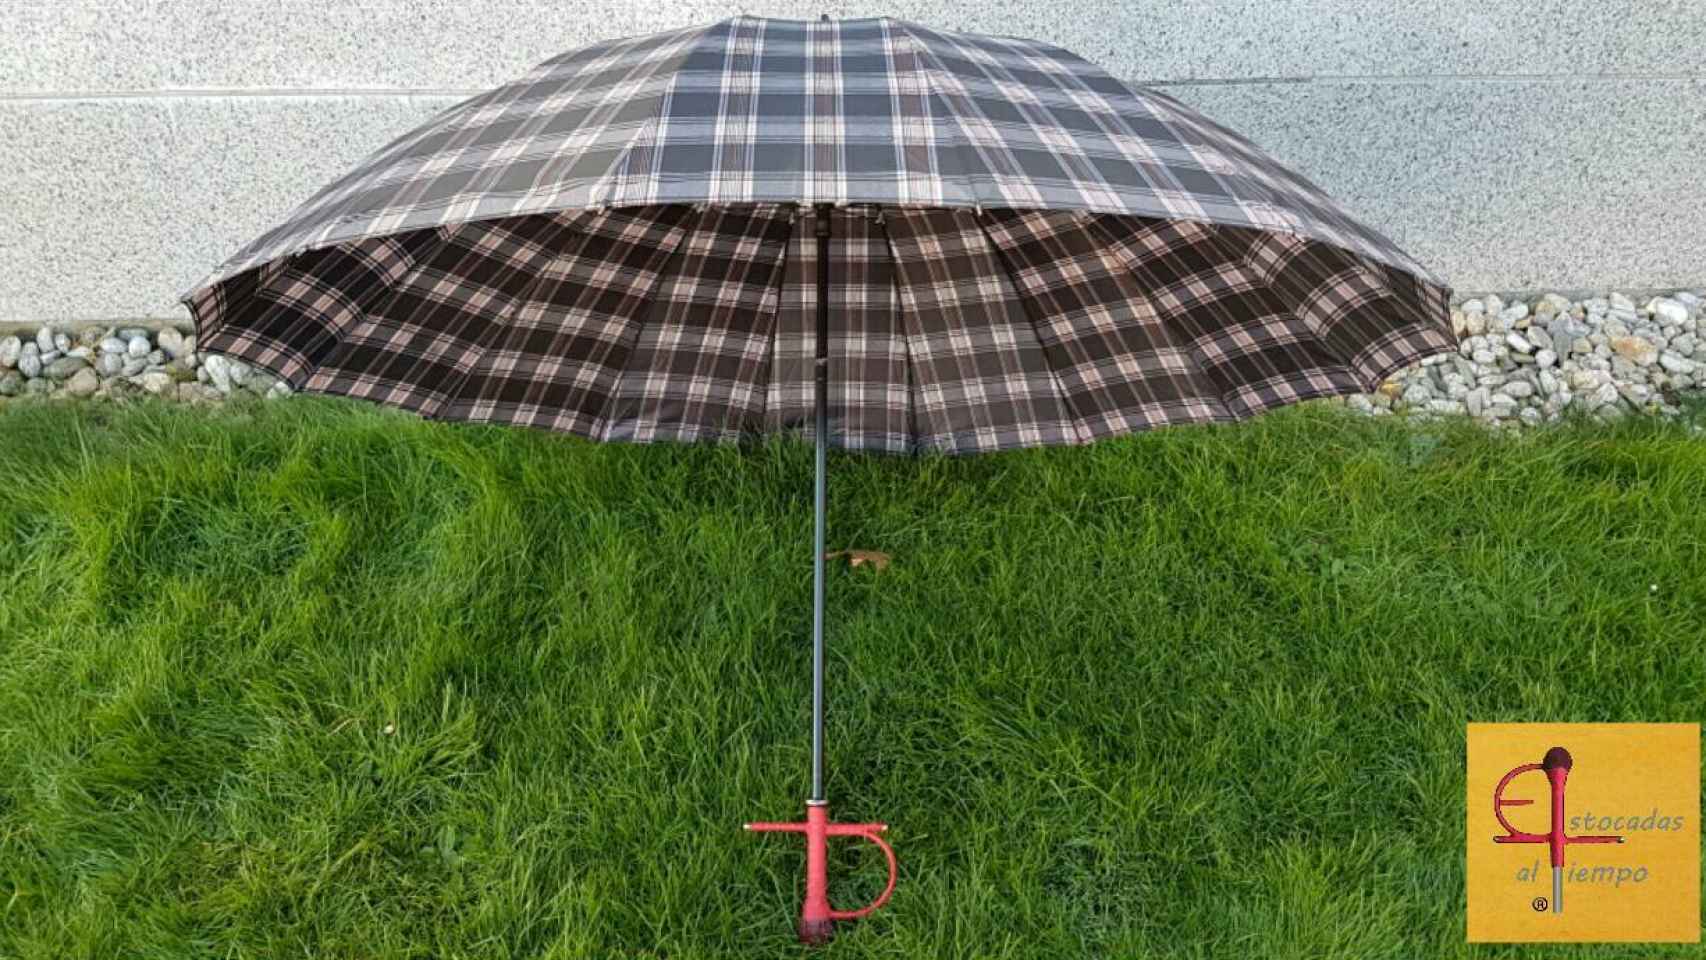 Uno de los modelos de Estocadas al tiempo, el paraguas que usa Abascal.